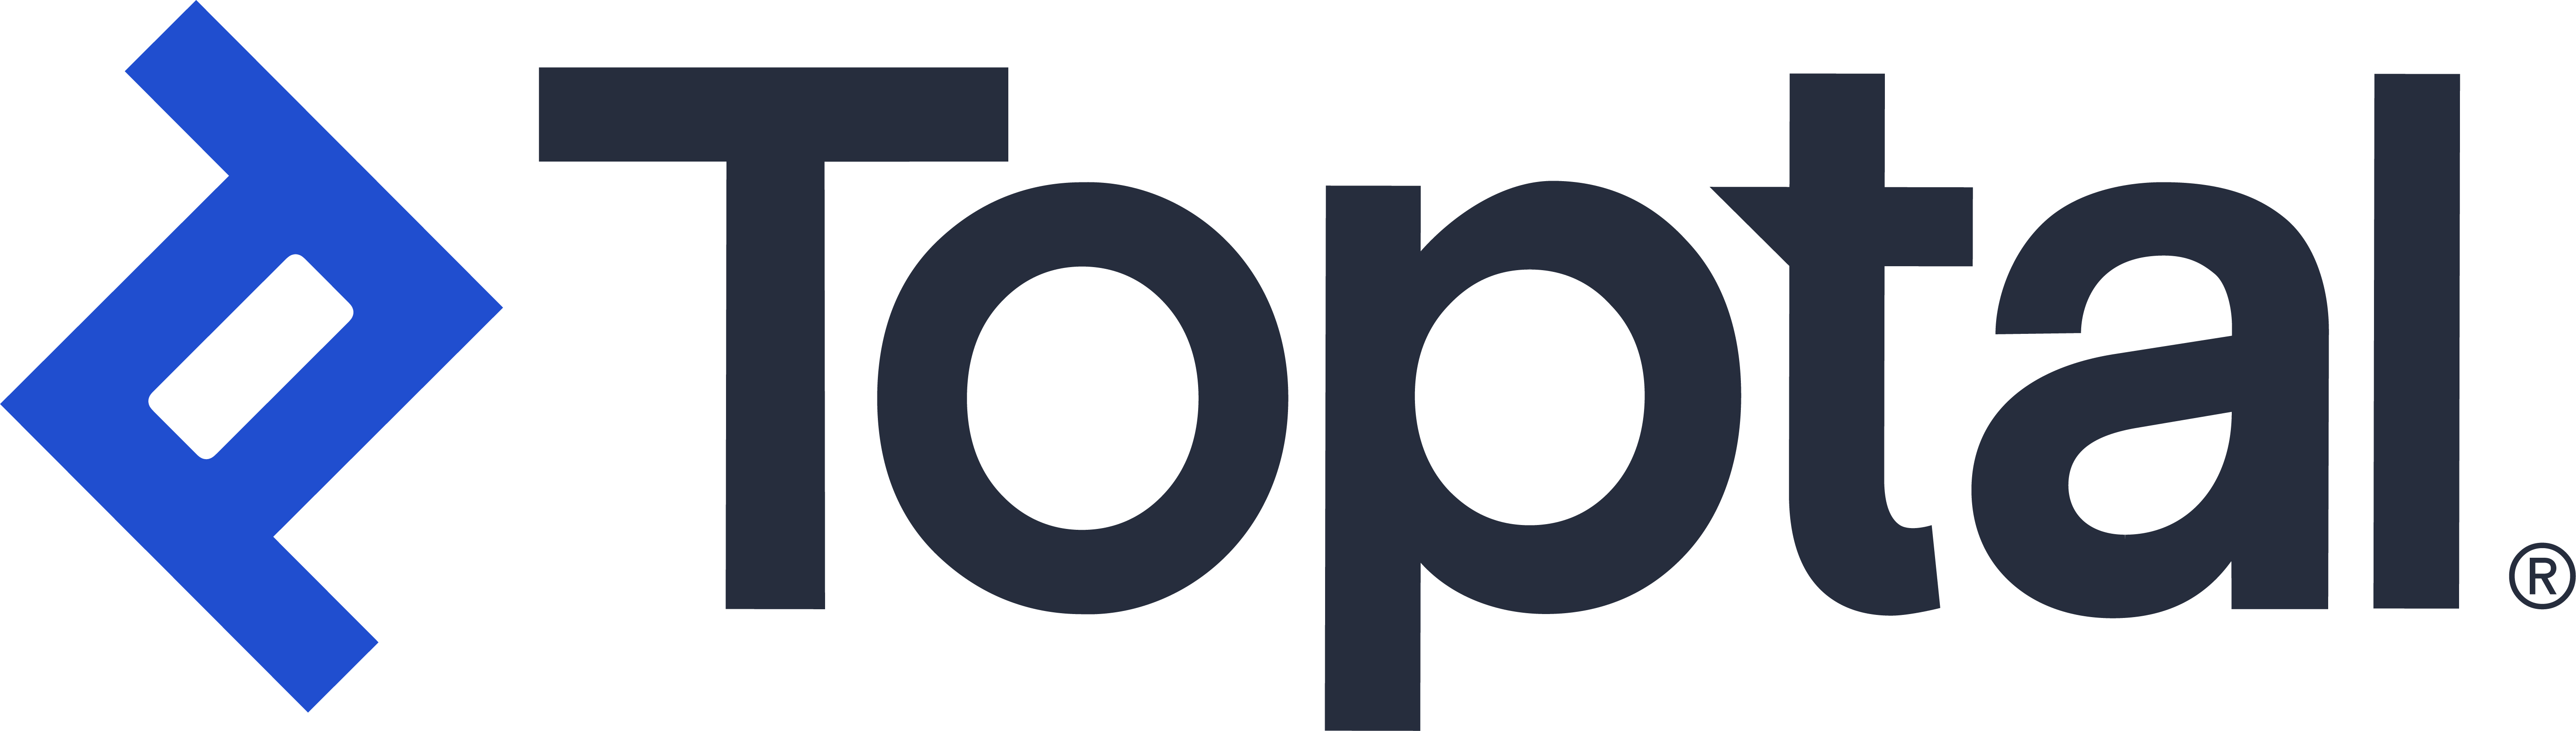 Toptal Logo Main Colors.png